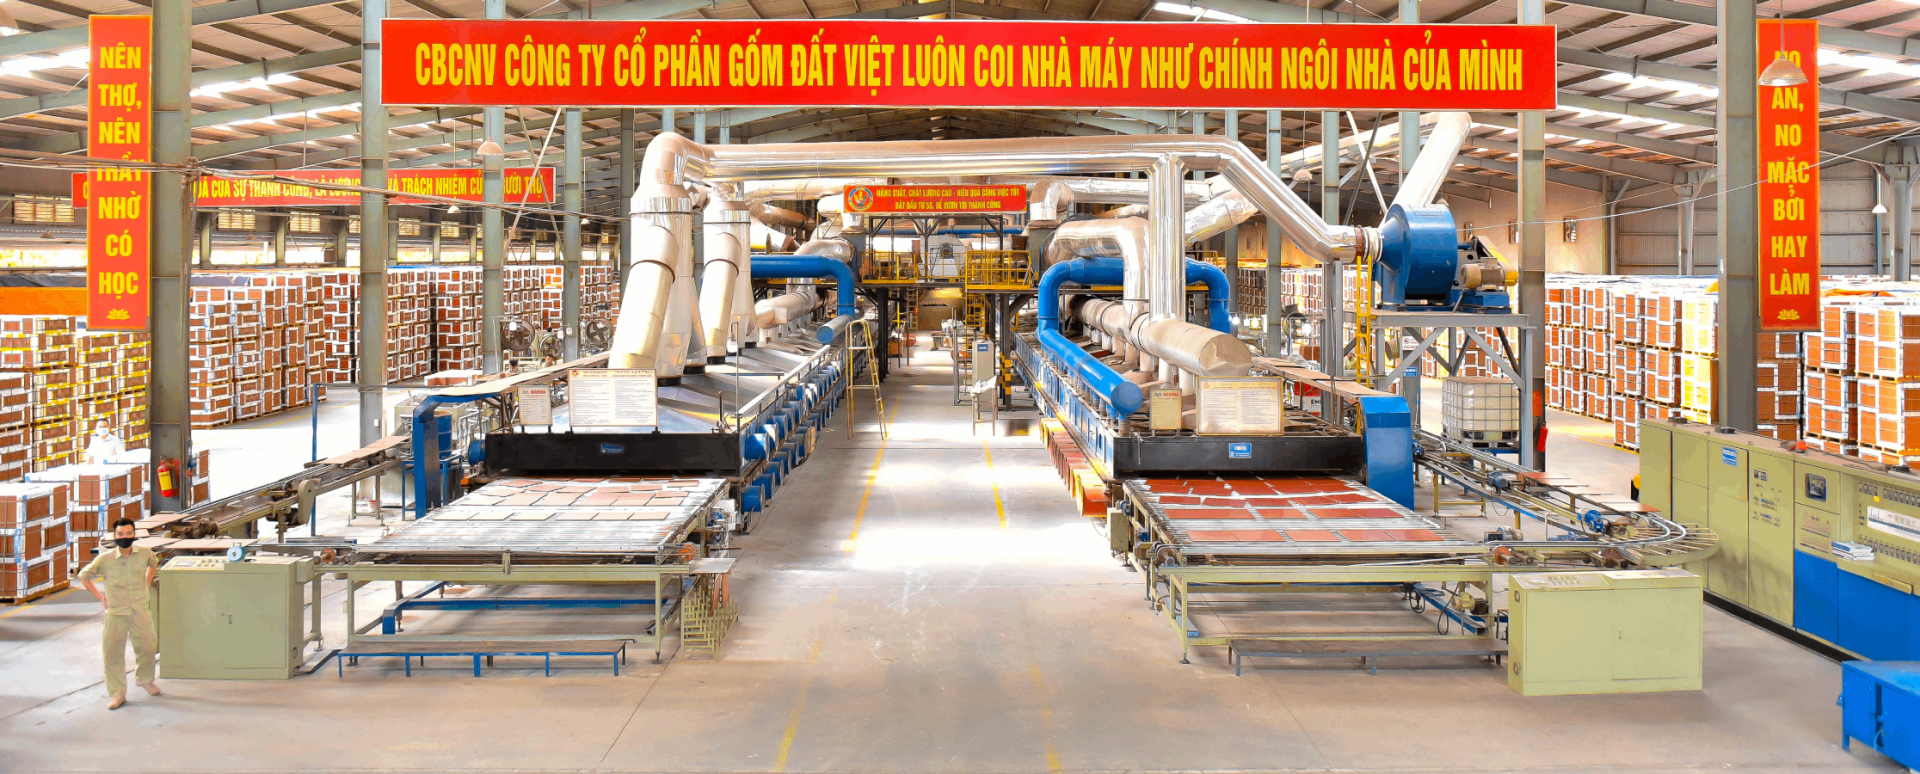 Một phần dây chuyền sản xuất tại nhà máy thuộc tổ hợp Gốm Đất Việt.